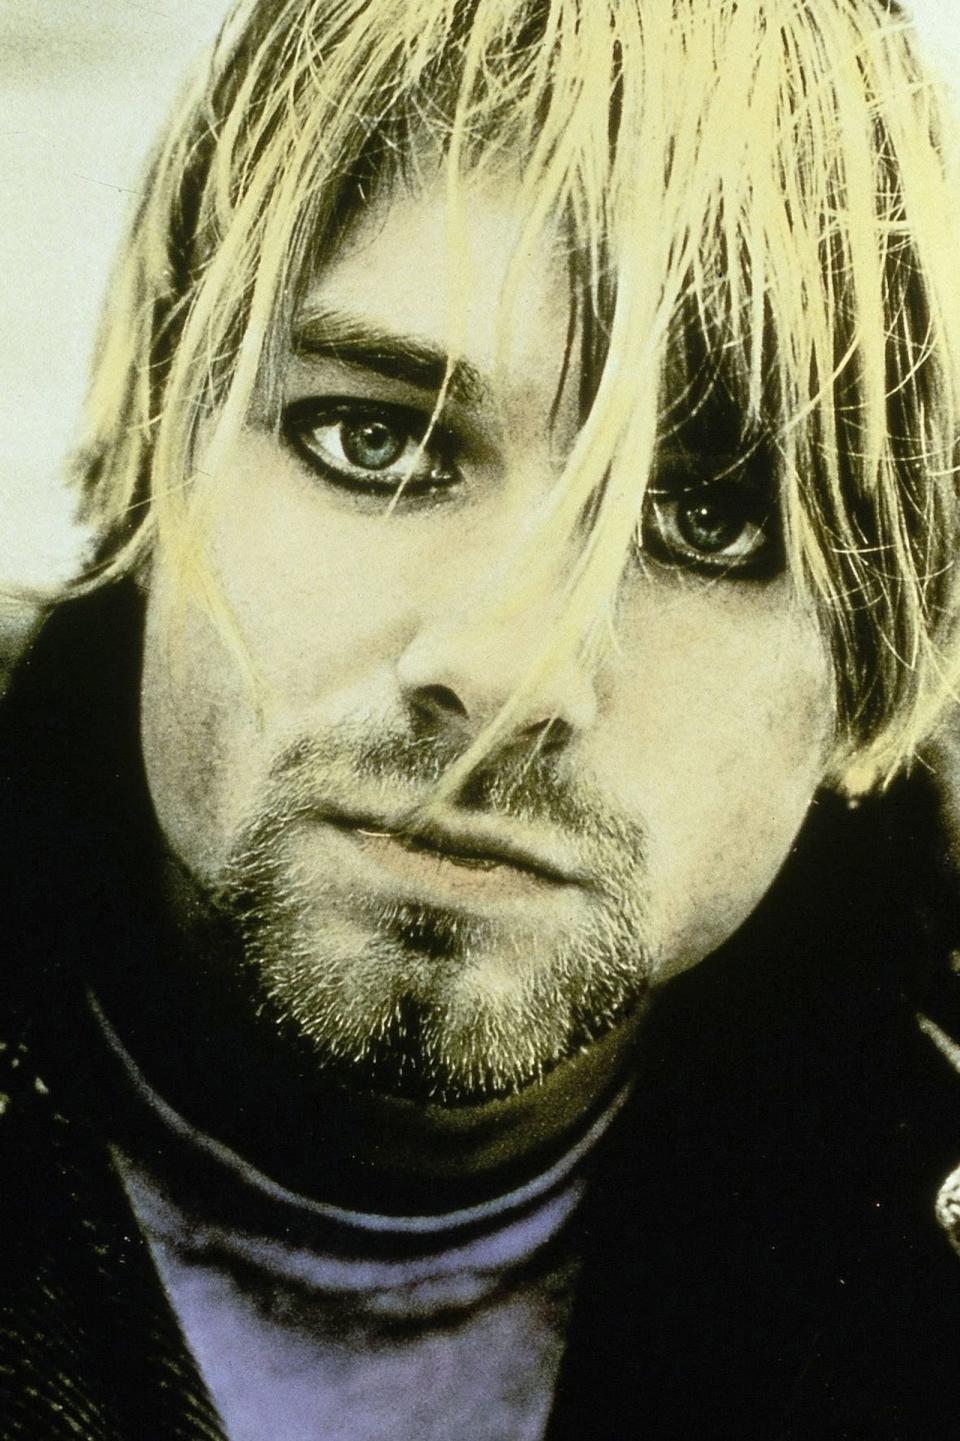 Kurt Cobain nahm sich am 5. April 1994 das Leben. Er wurde 27 Jahre alt und gehört damit zum 